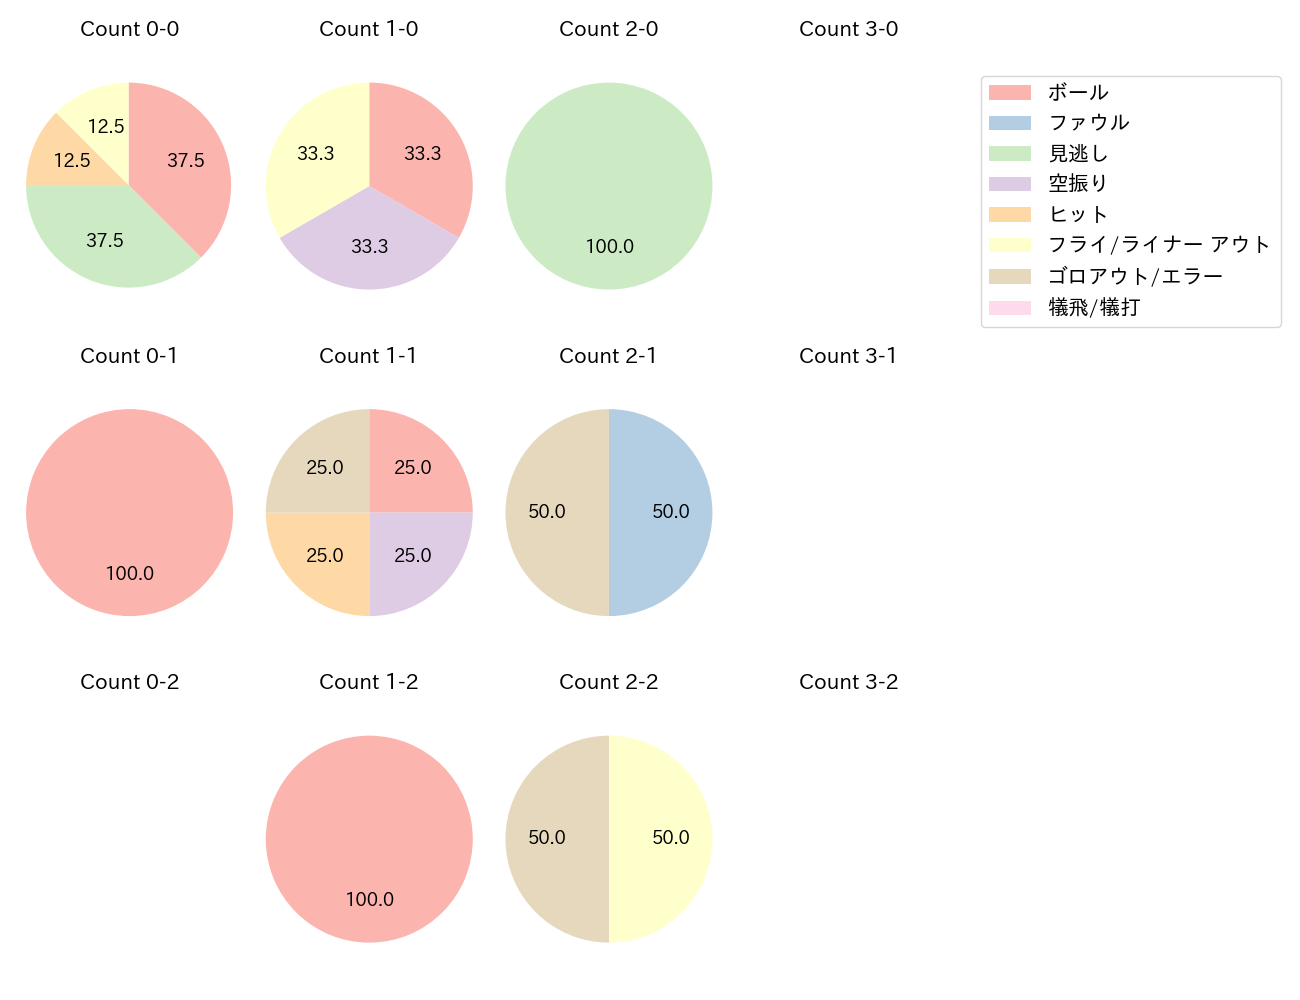 中川 圭太の球数分布(2021年3月)